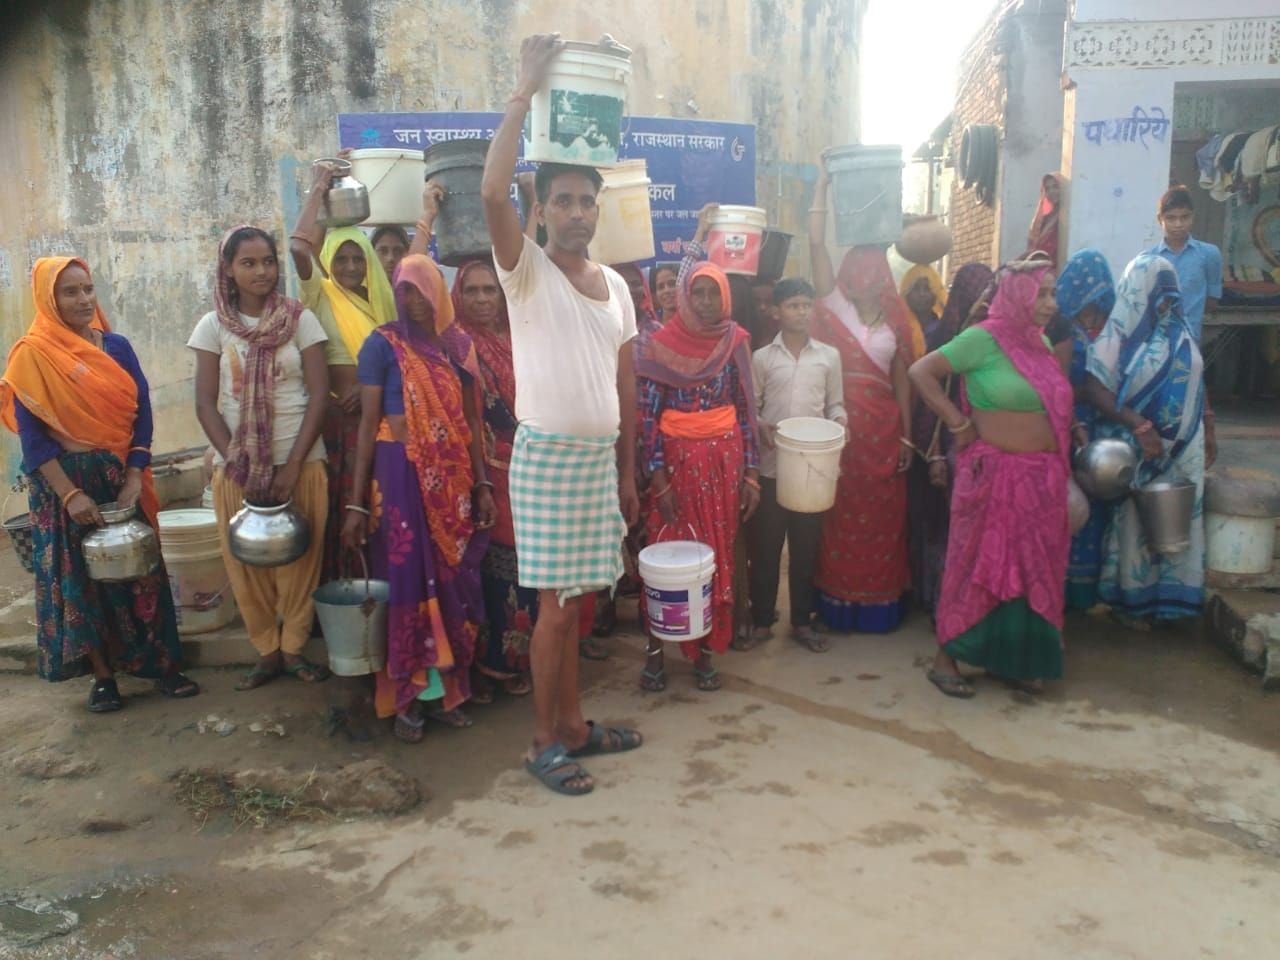 पेयजल संकट पर शिवसिंहपुरा के ग्रामीणों ने किया प्रदर्शन